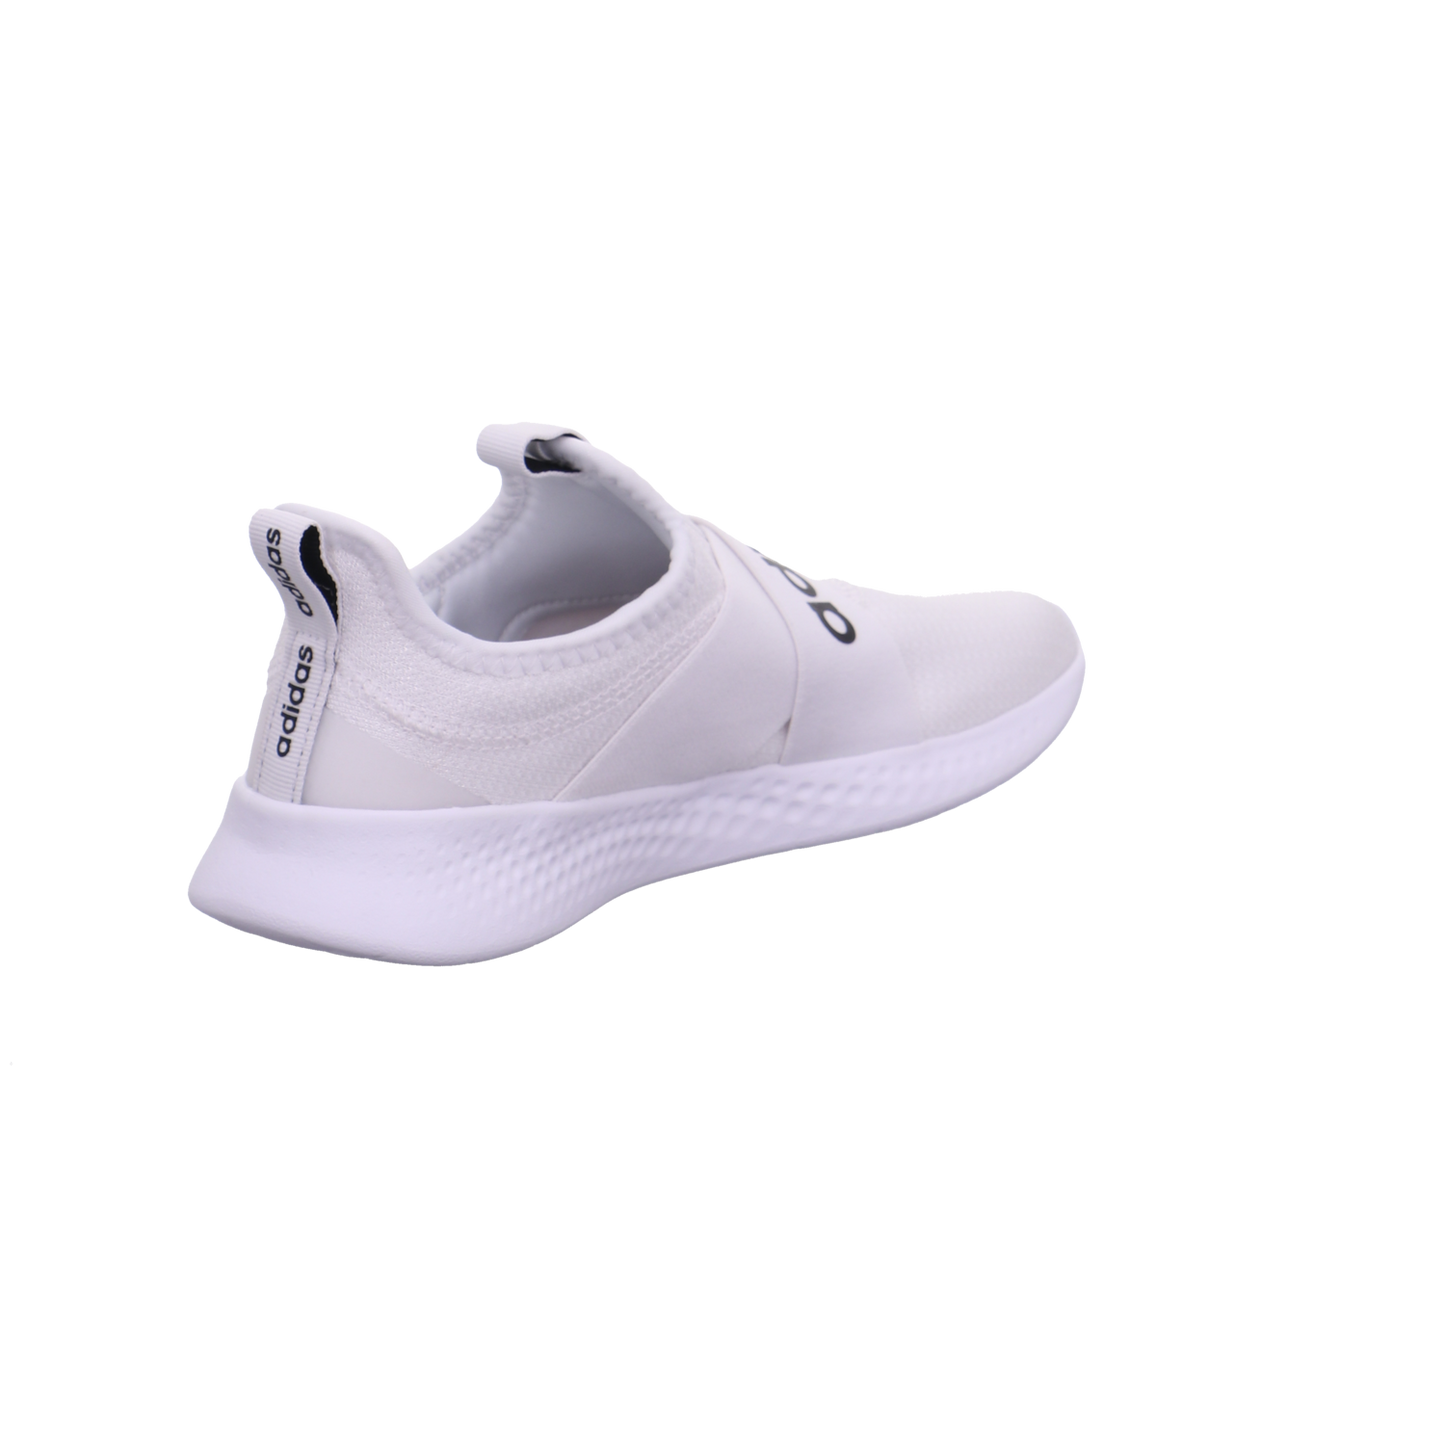 Adidas Sneaker weiß-schwarz Bild5